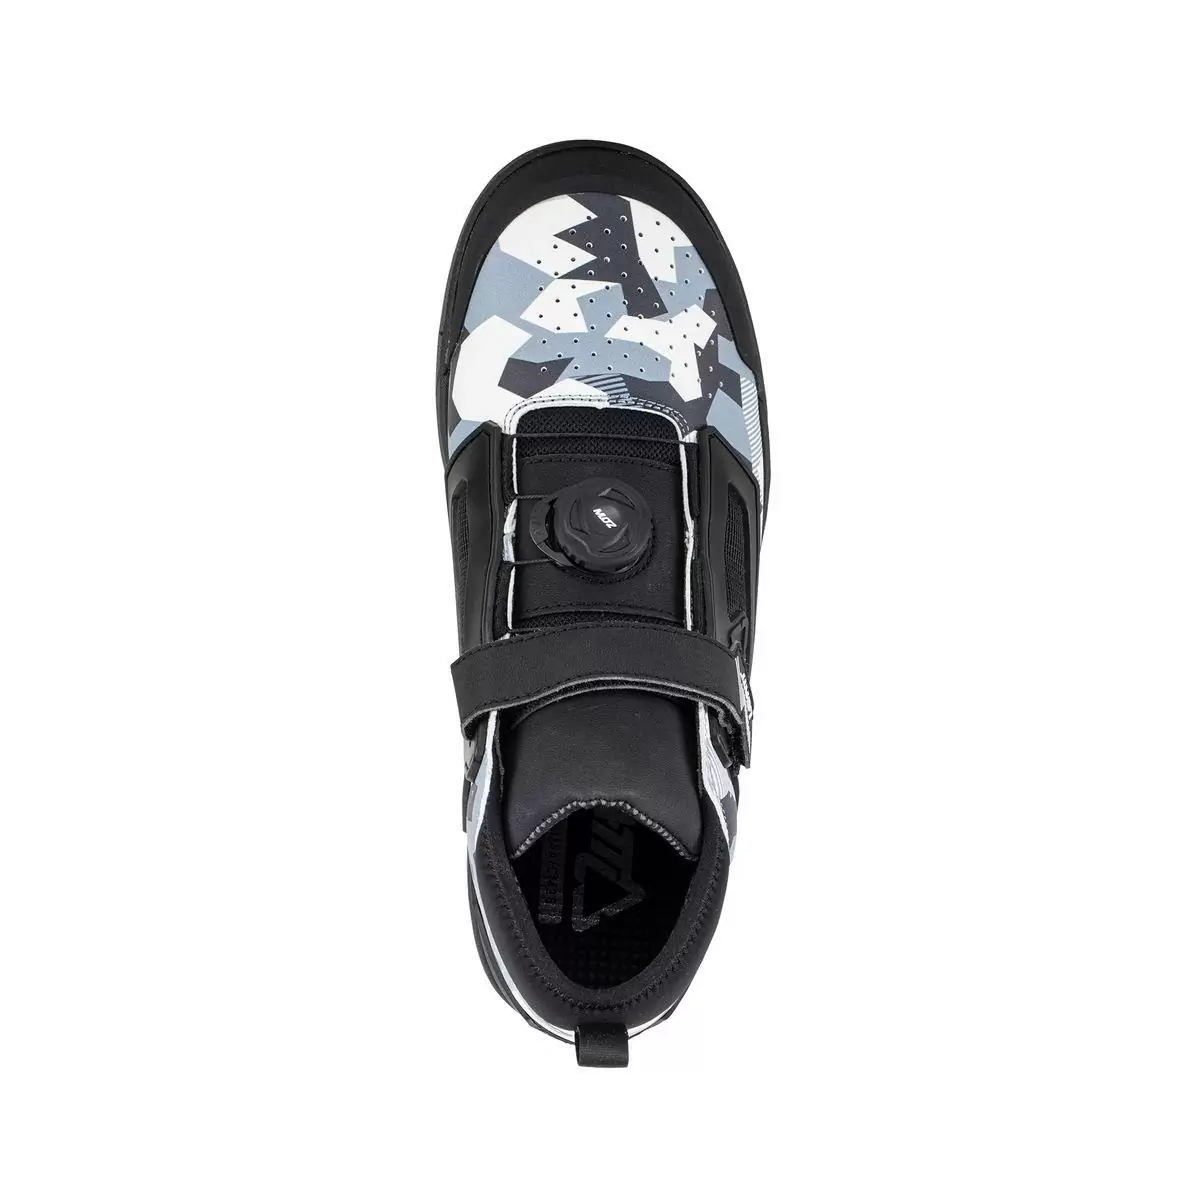 Chaussures VTT 3.0 Flat Pro Blanc/Noir Taille 41.5 #2